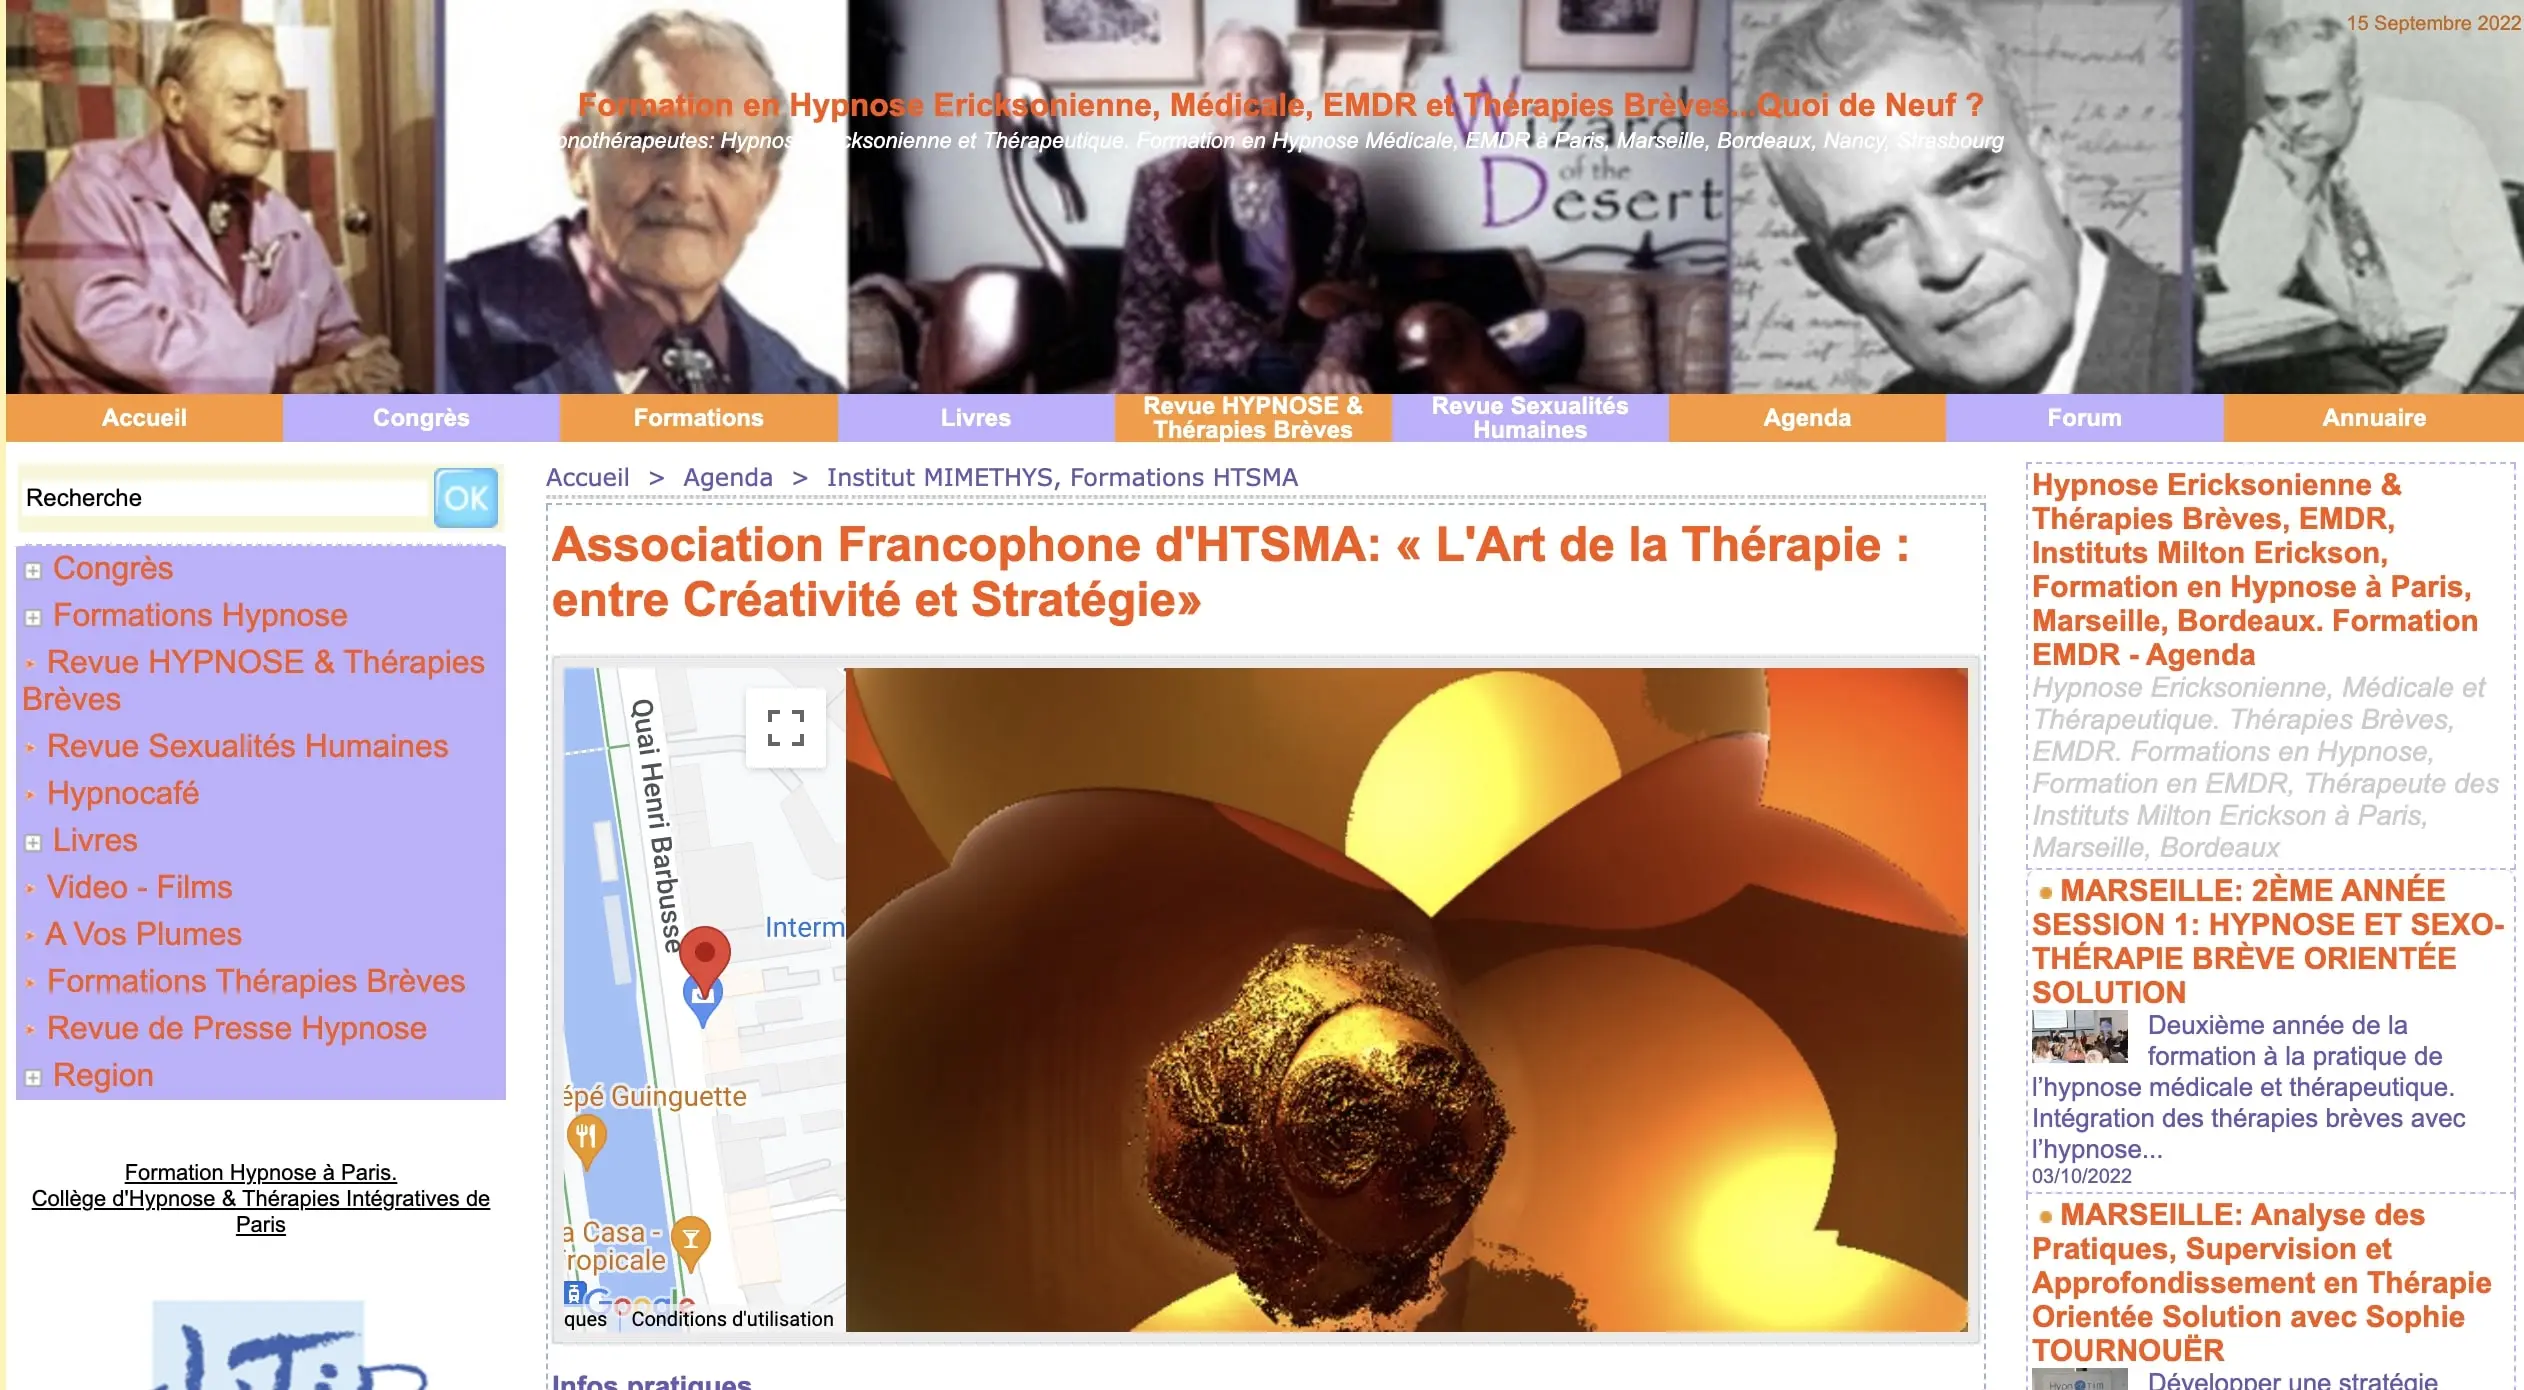 Annonce de la conférence "L'art de la Thérapie : entre Créativité et Stratégie" pour l'Association Francophone d'HTSMA